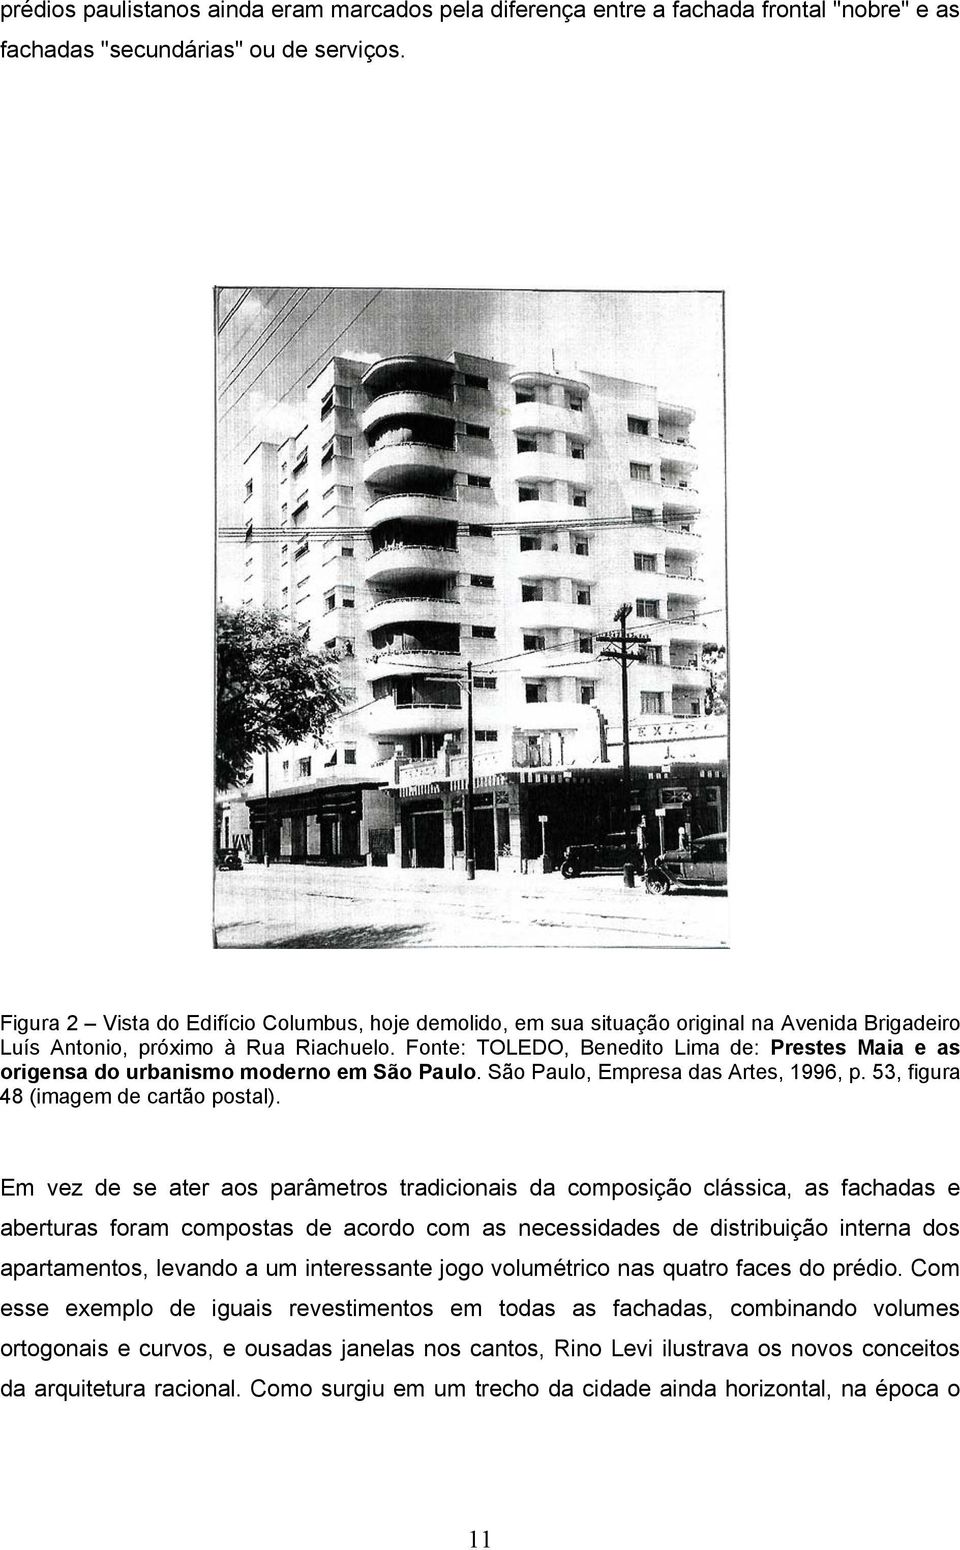 Fonte: TOLEDO, Benedito Lima de: Prestes Maia e as origensa do urbanismo moderno em São Paulo. São Paulo, Empresa das Artes, 1996, p. 53, figura 48 (imagem de cartão postal).